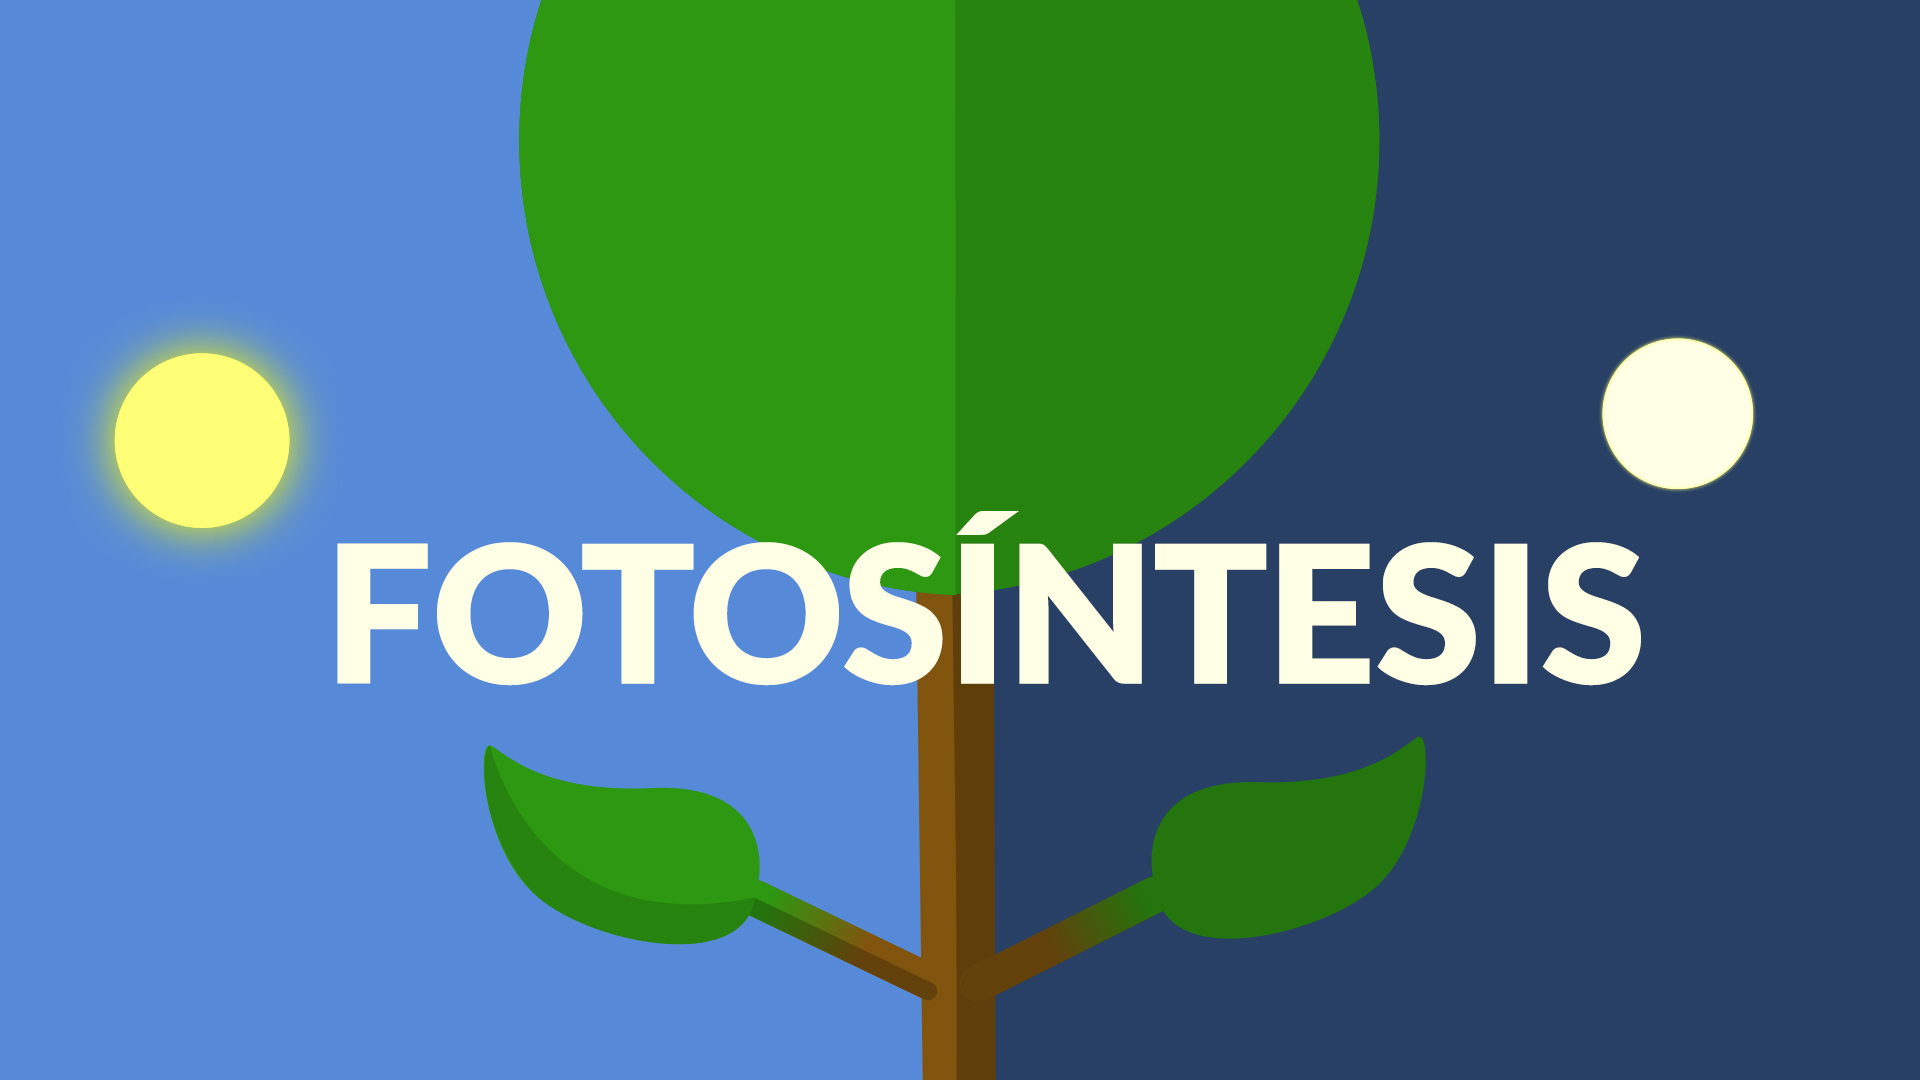 La fotosíntesis: Fase luminosa y oscura - Hidden Nature